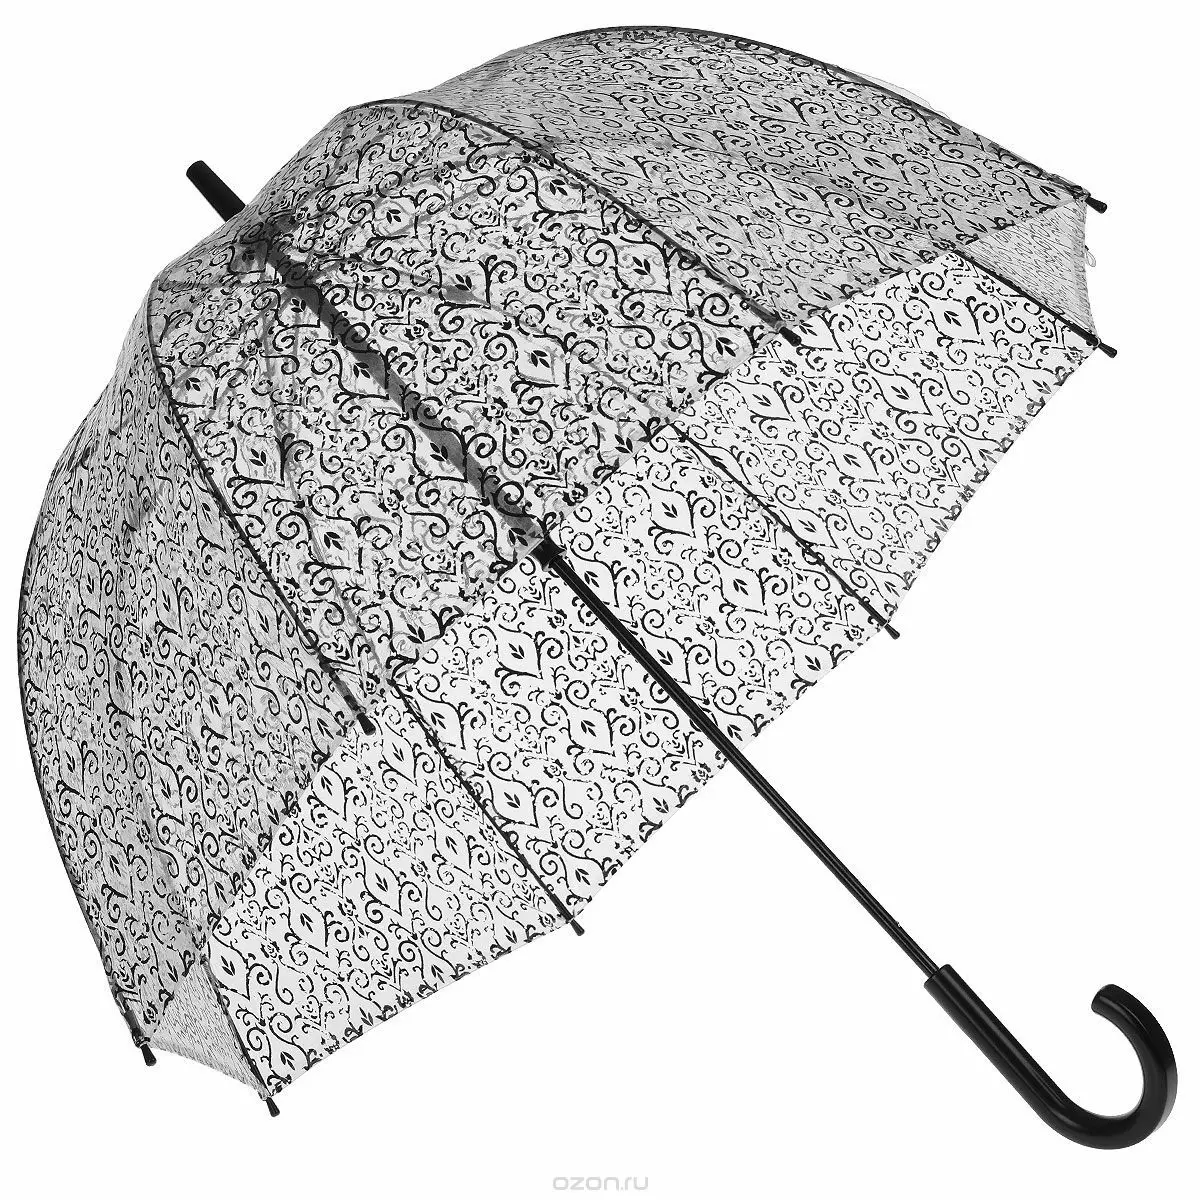 Umbrella negra (47 fotos): canya de dona 15217_10